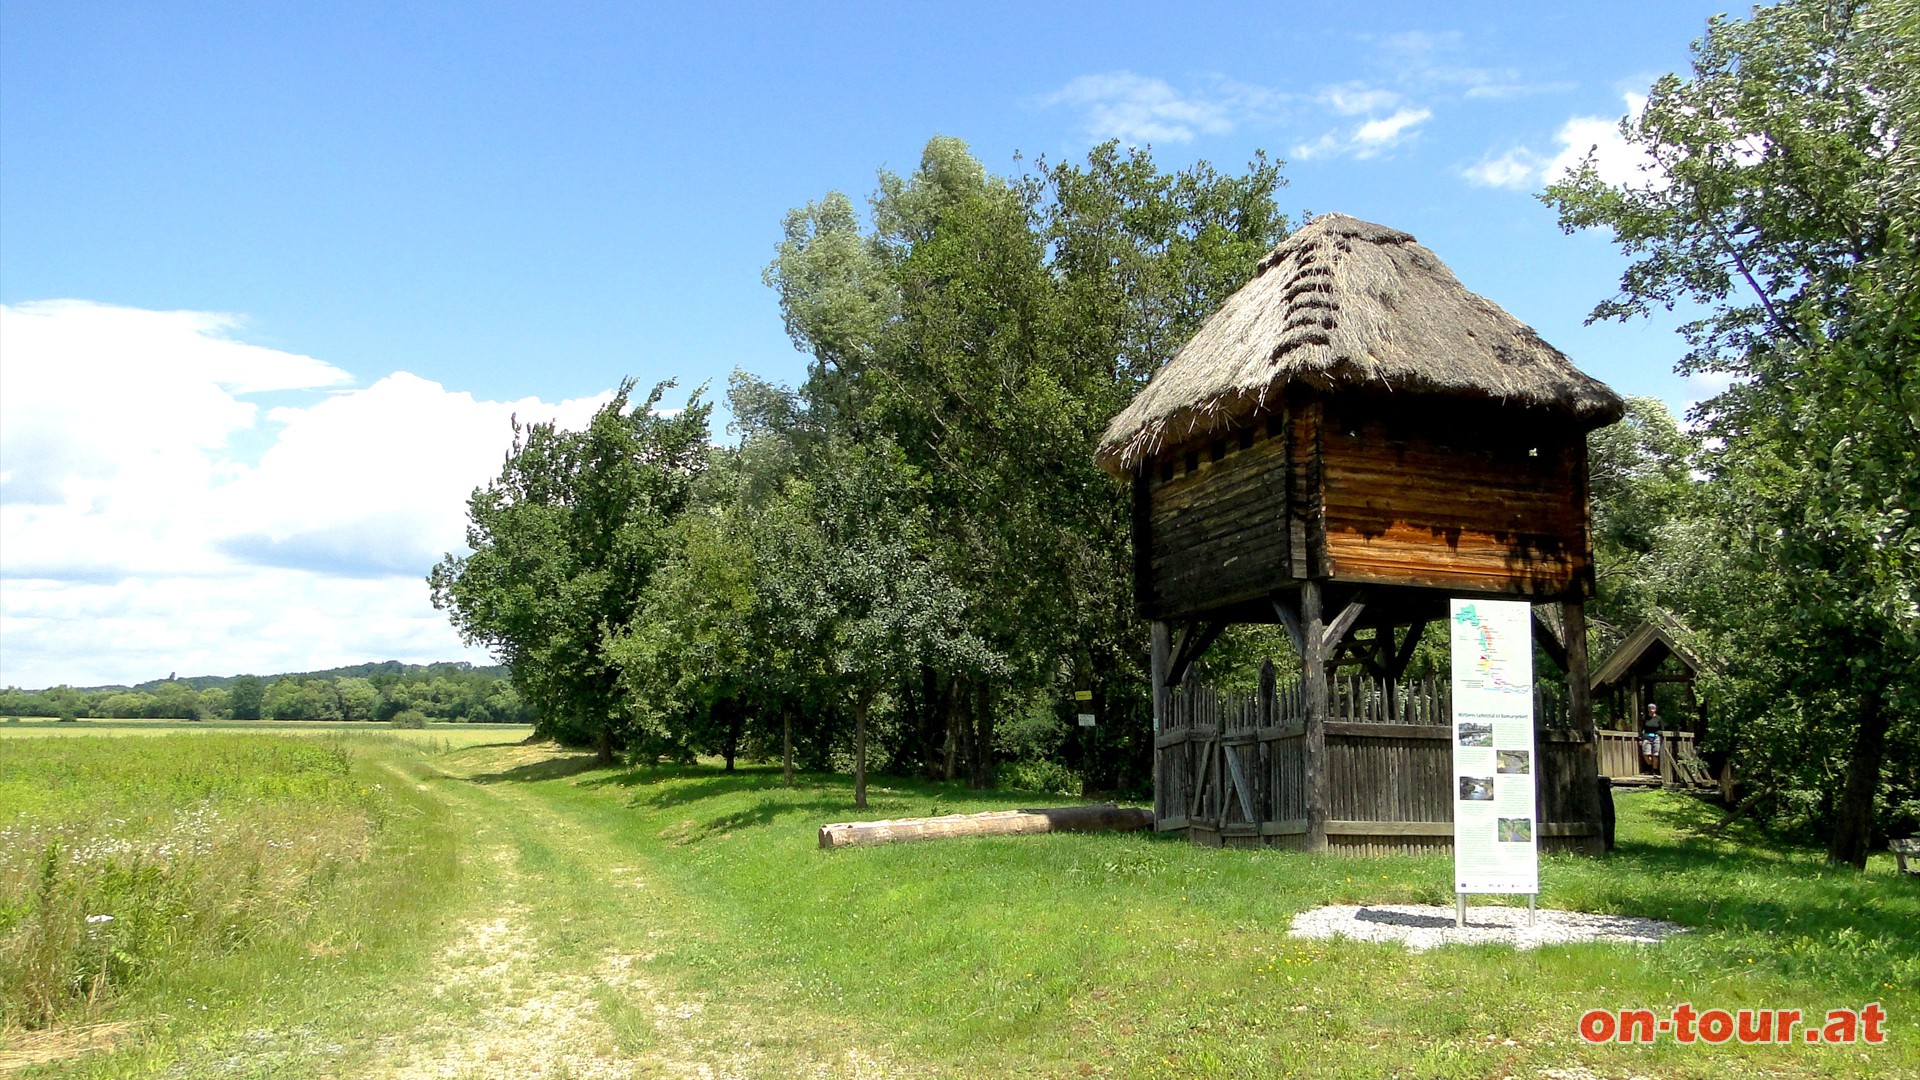 Links weiter, zurck zur Lafnitz. Eine Tschartake, ein Grenzwchterturm, erinnert an die ehemalige steirisch - westungarische (burgenlndische) Grenze.